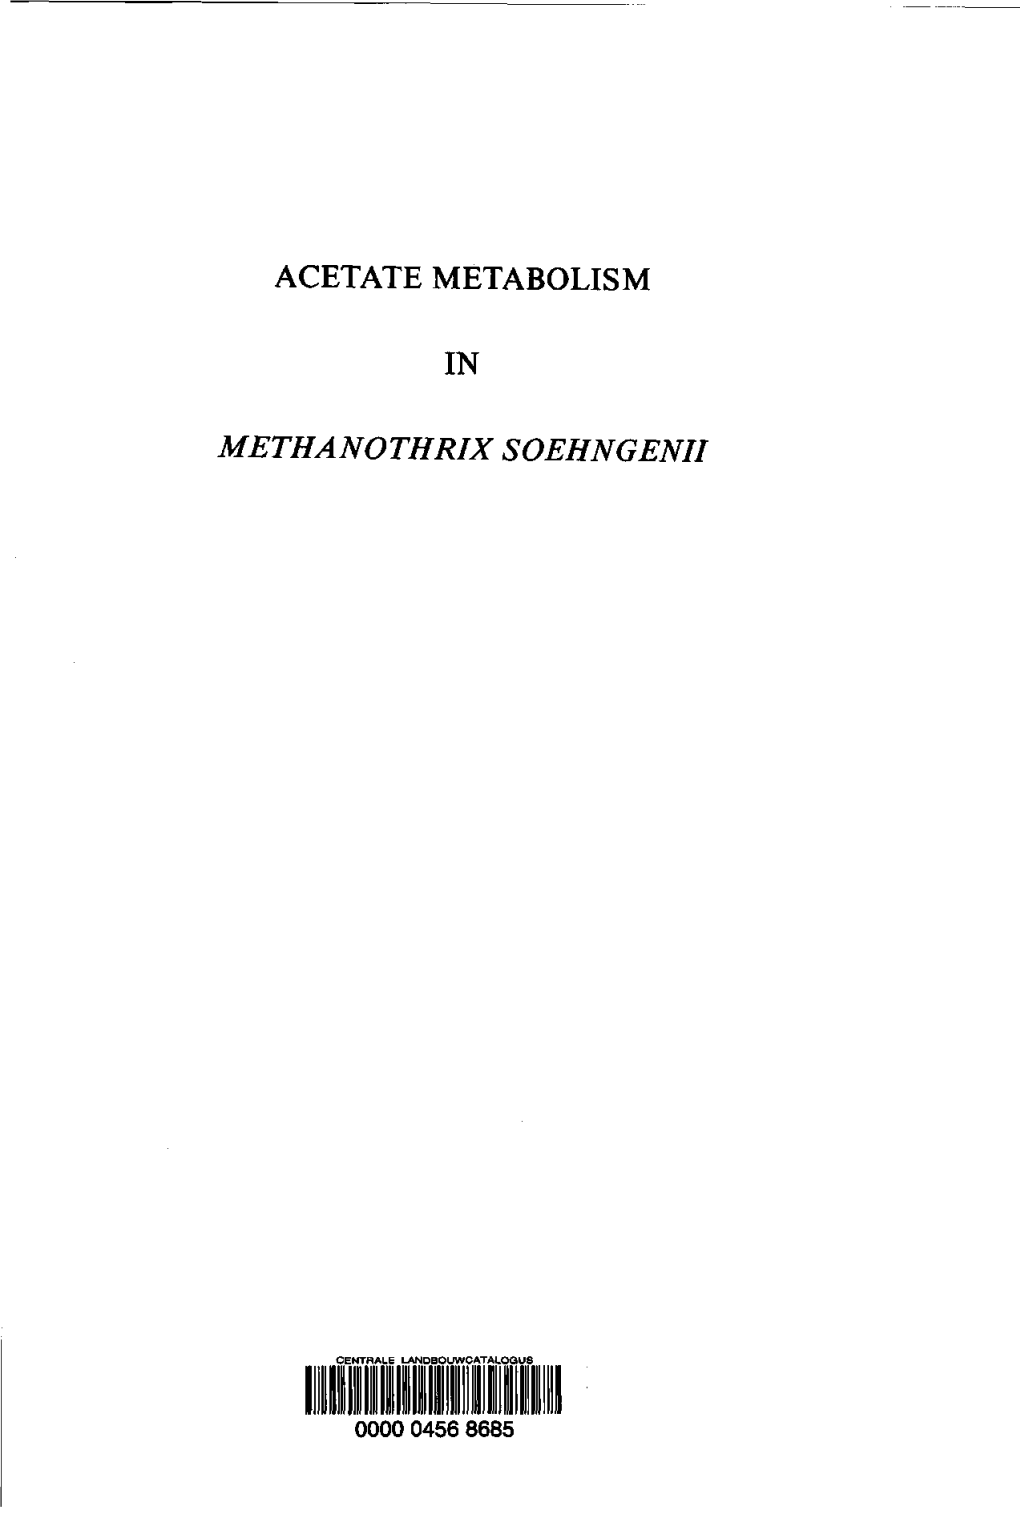 Acetate Metabolism in Methanothrix Soehngenii